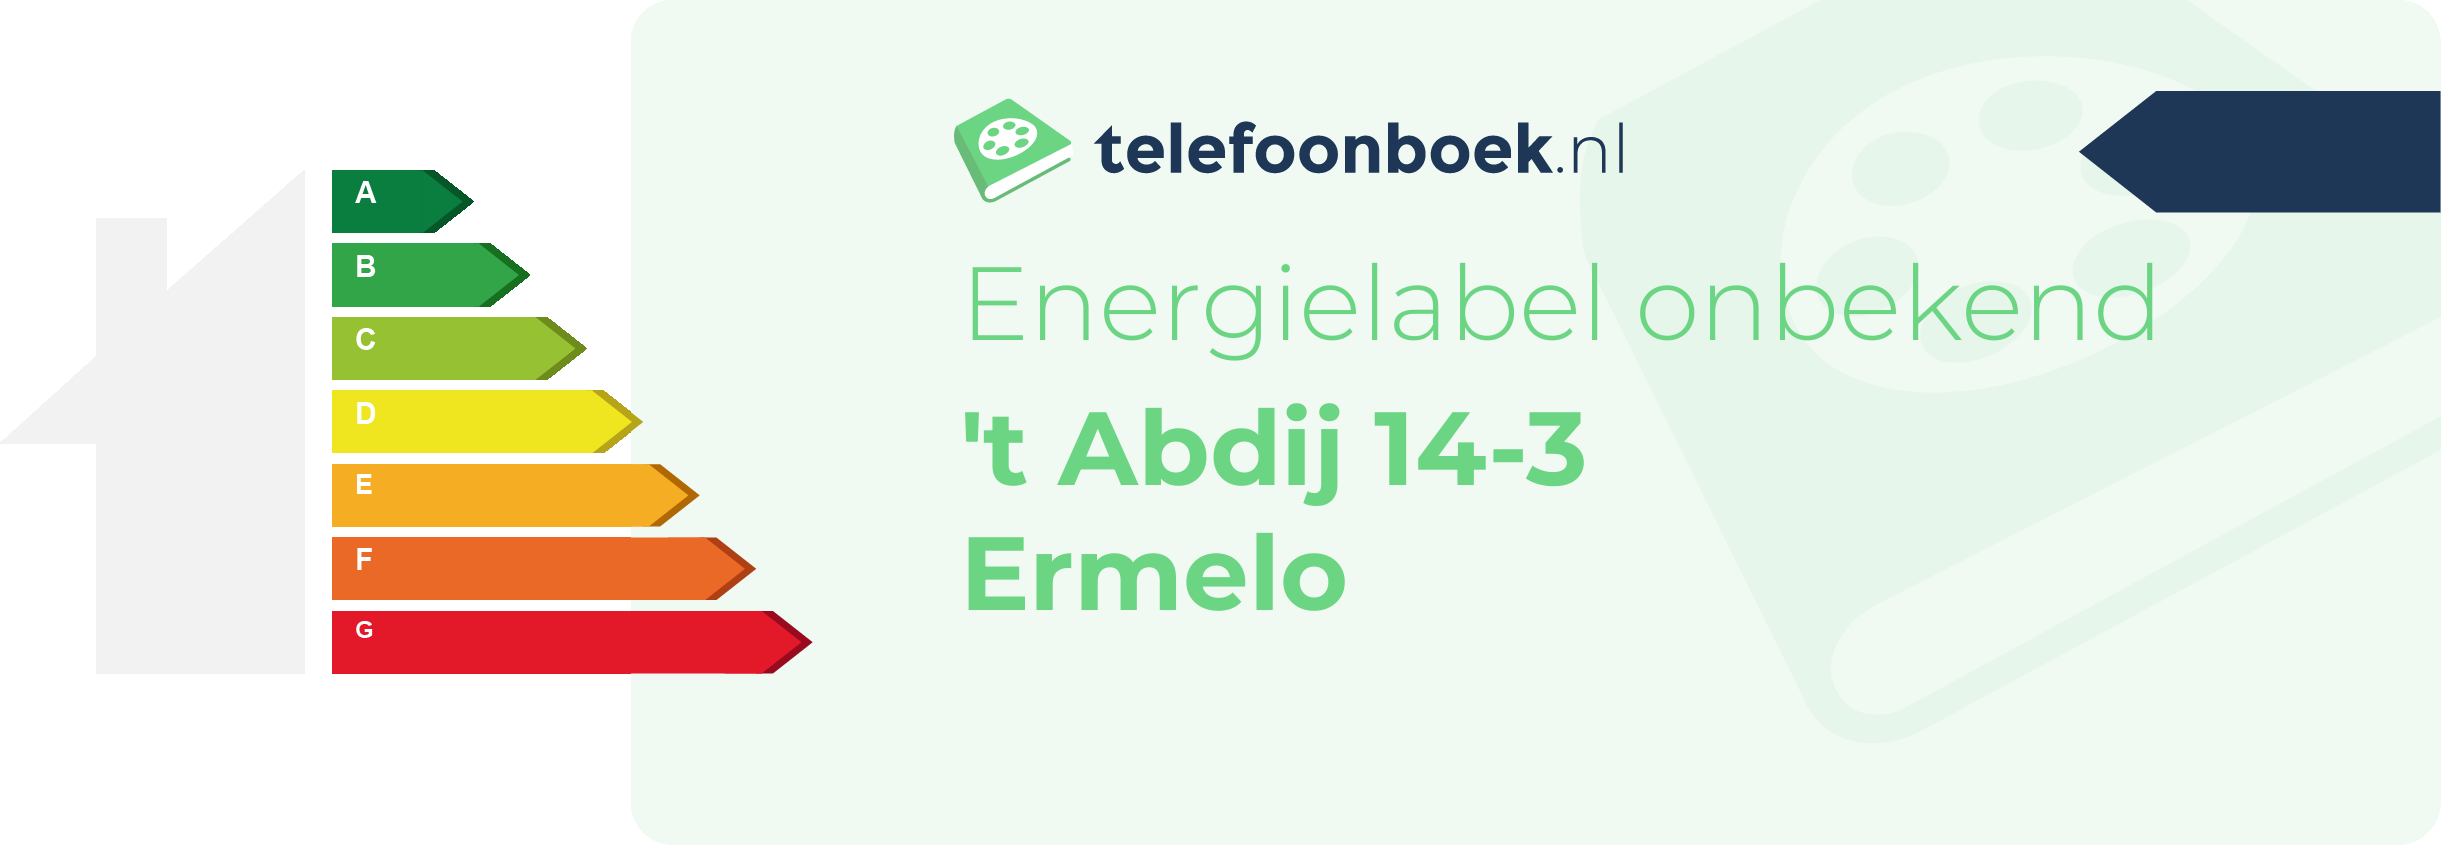 Energielabel 't Abdij 14-3 Ermelo